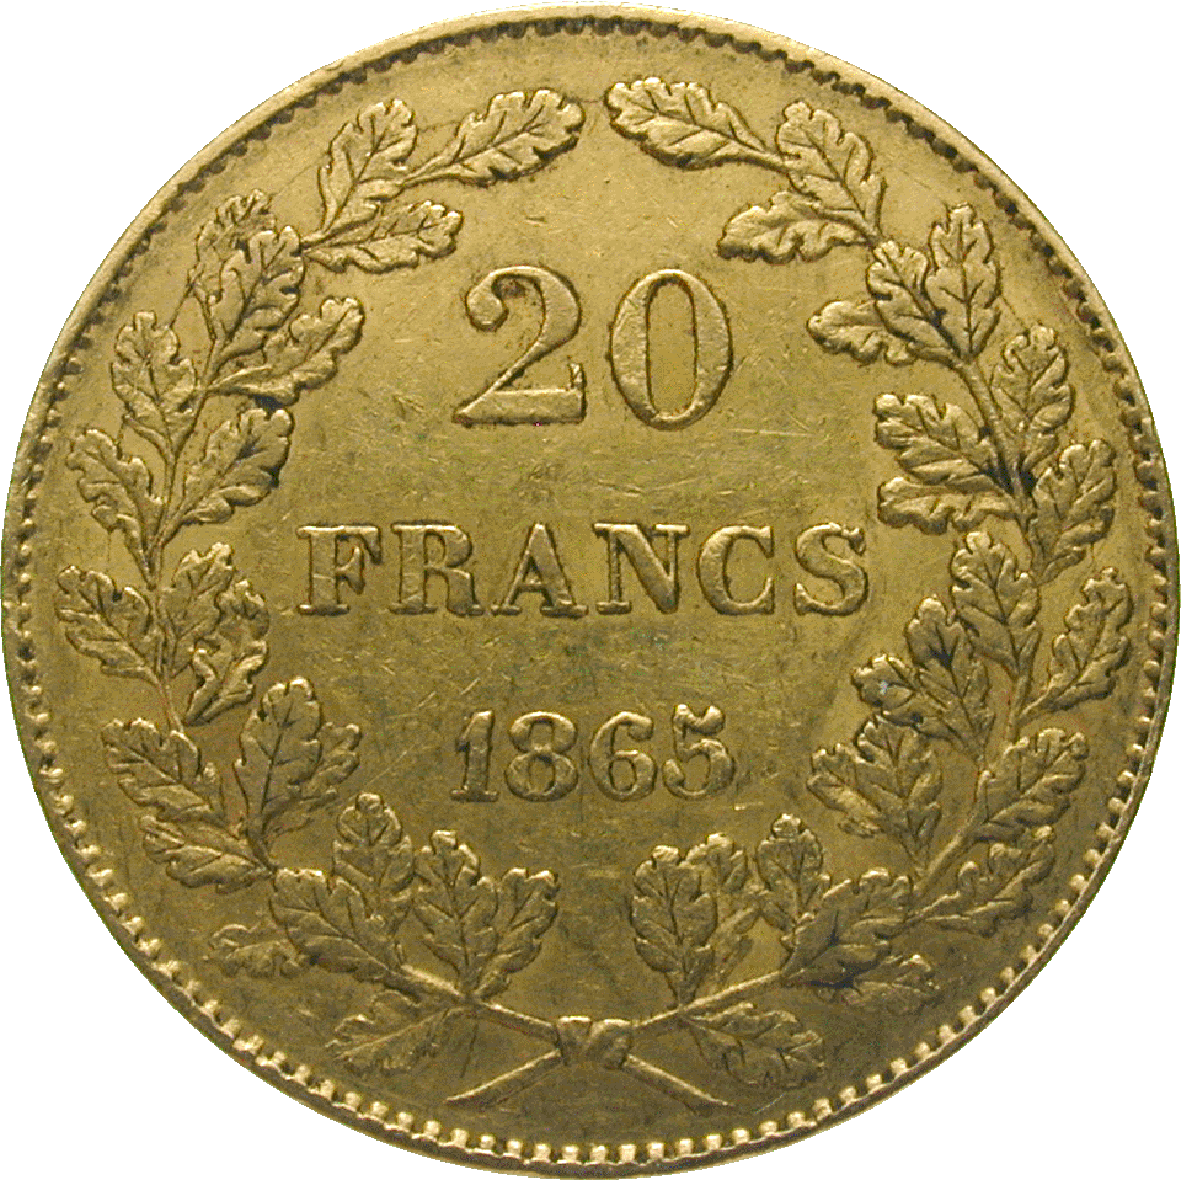 Königreich Belgien, Leopold I., 20 Francs 1865 (reverse)